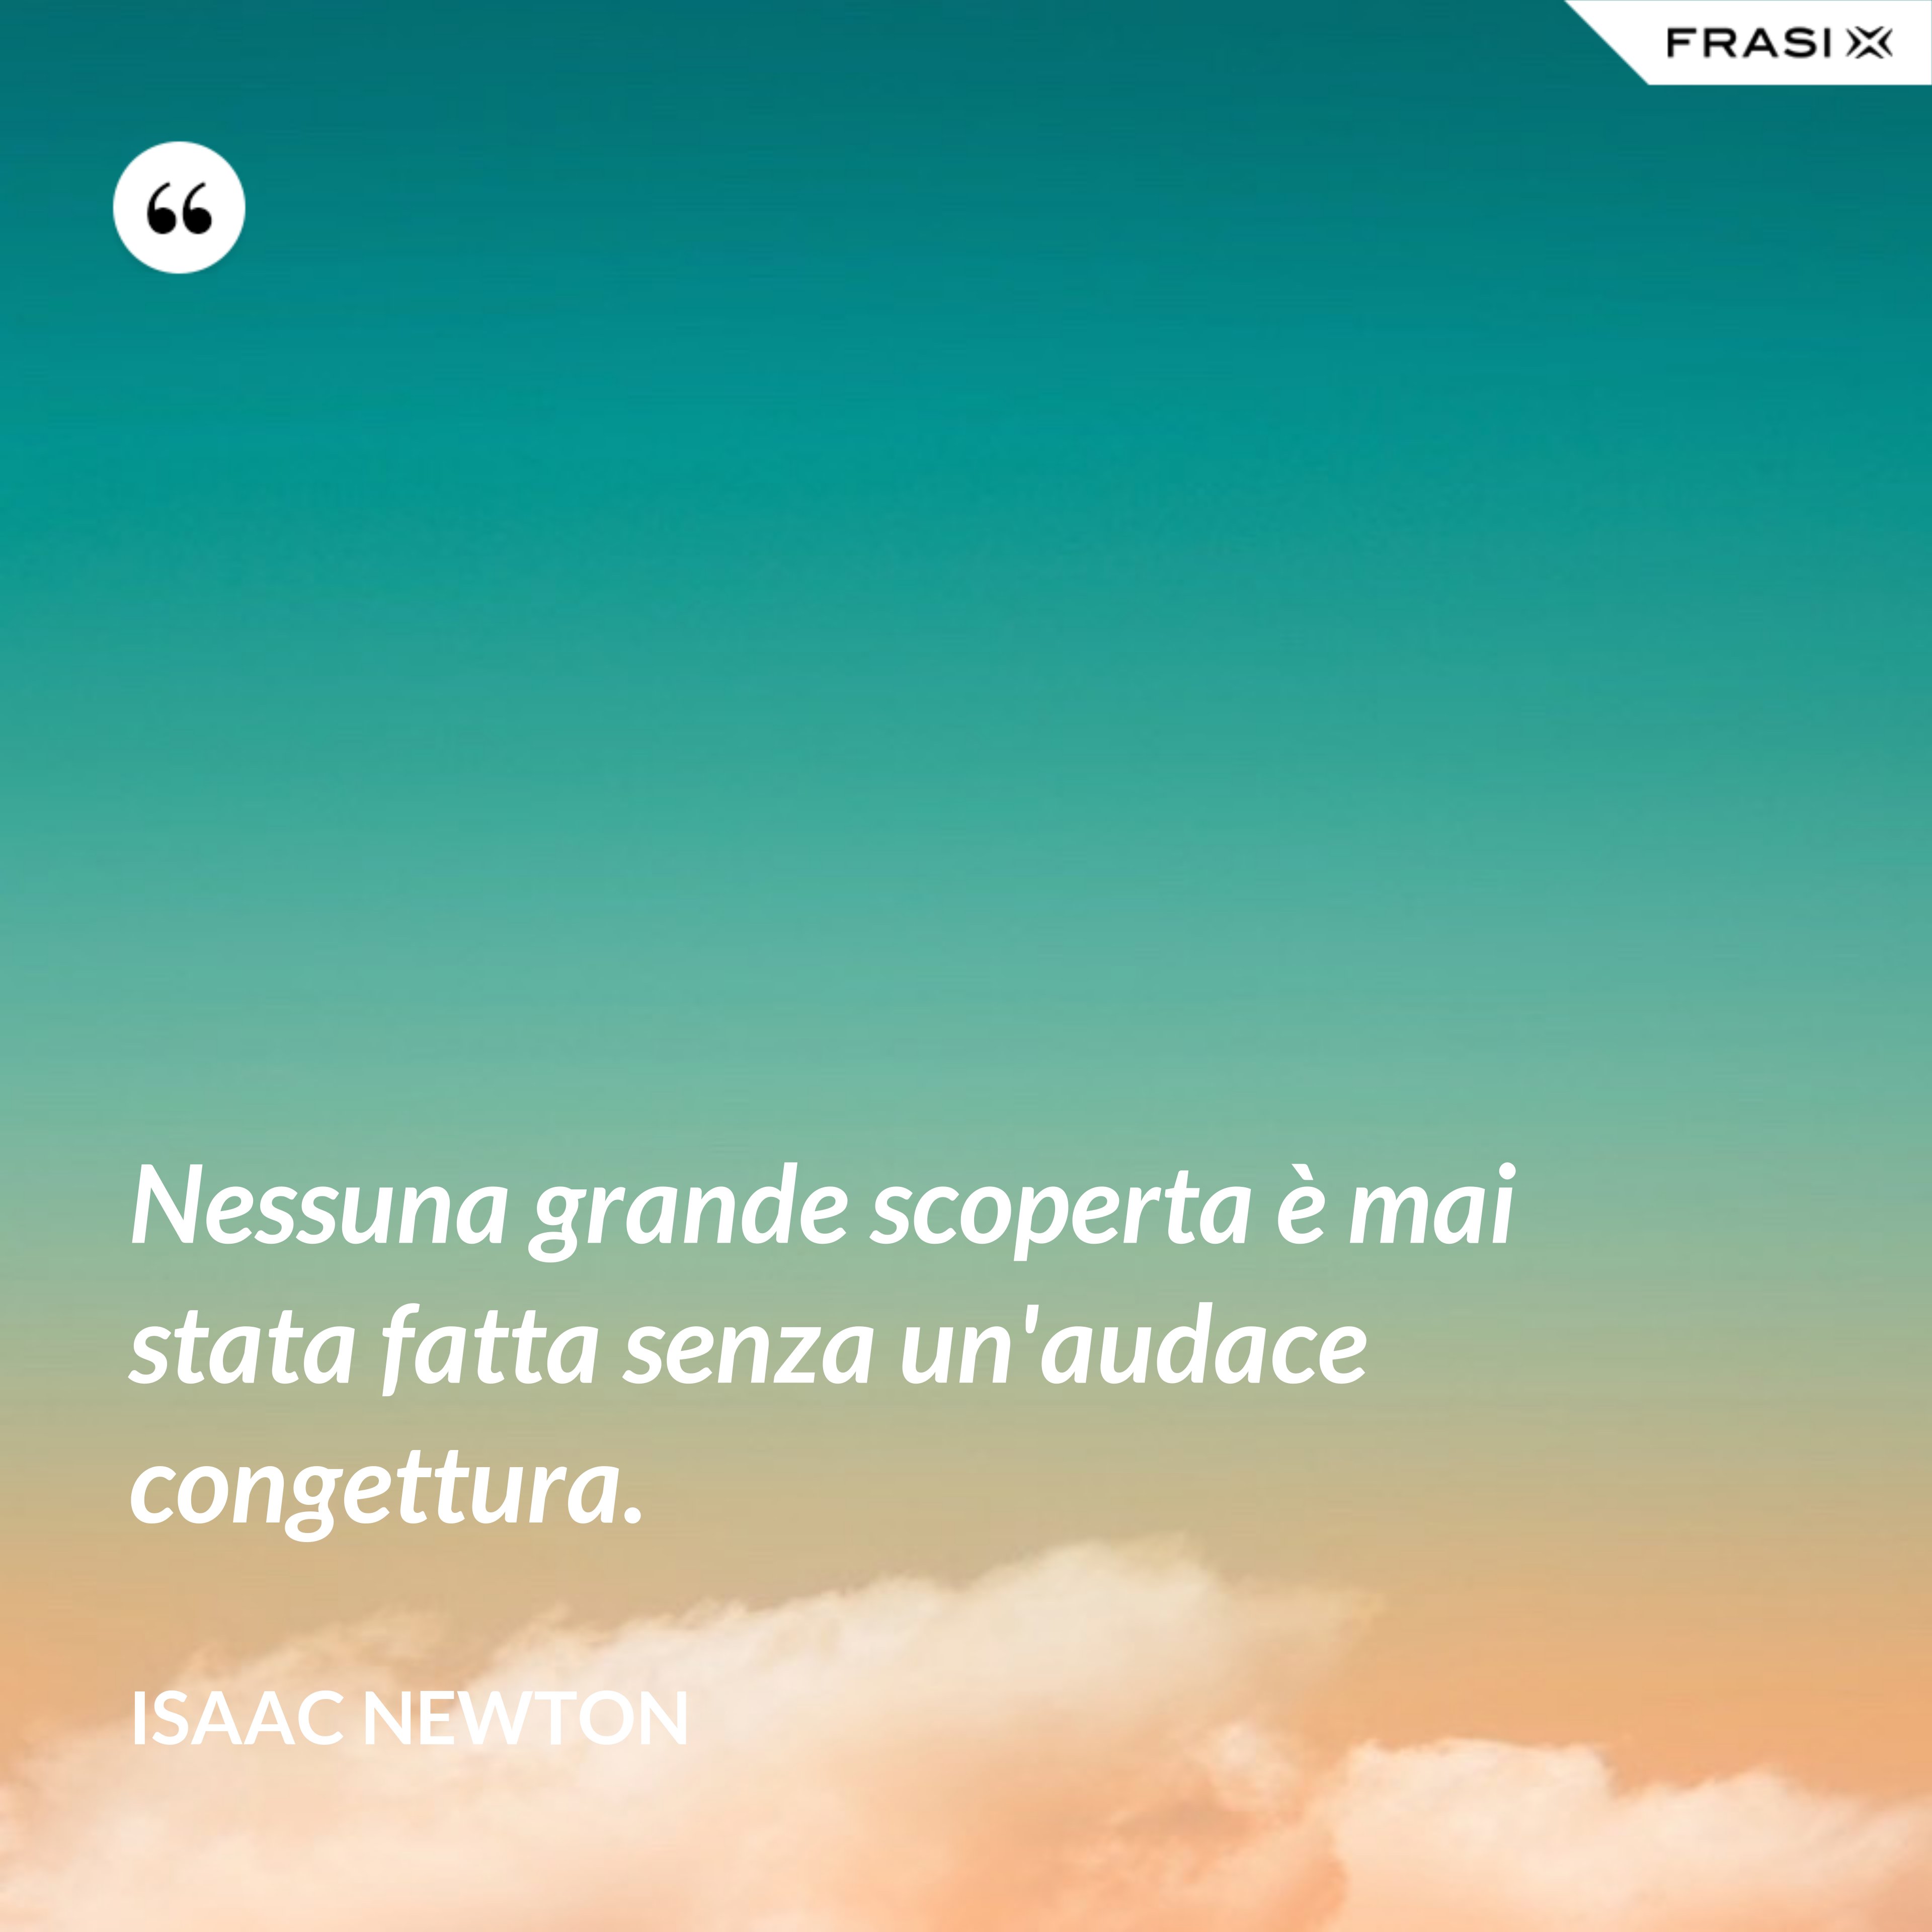 Nessuna grande scoperta è mai stata fatta senza un'audace congettura. - Isaac Newton